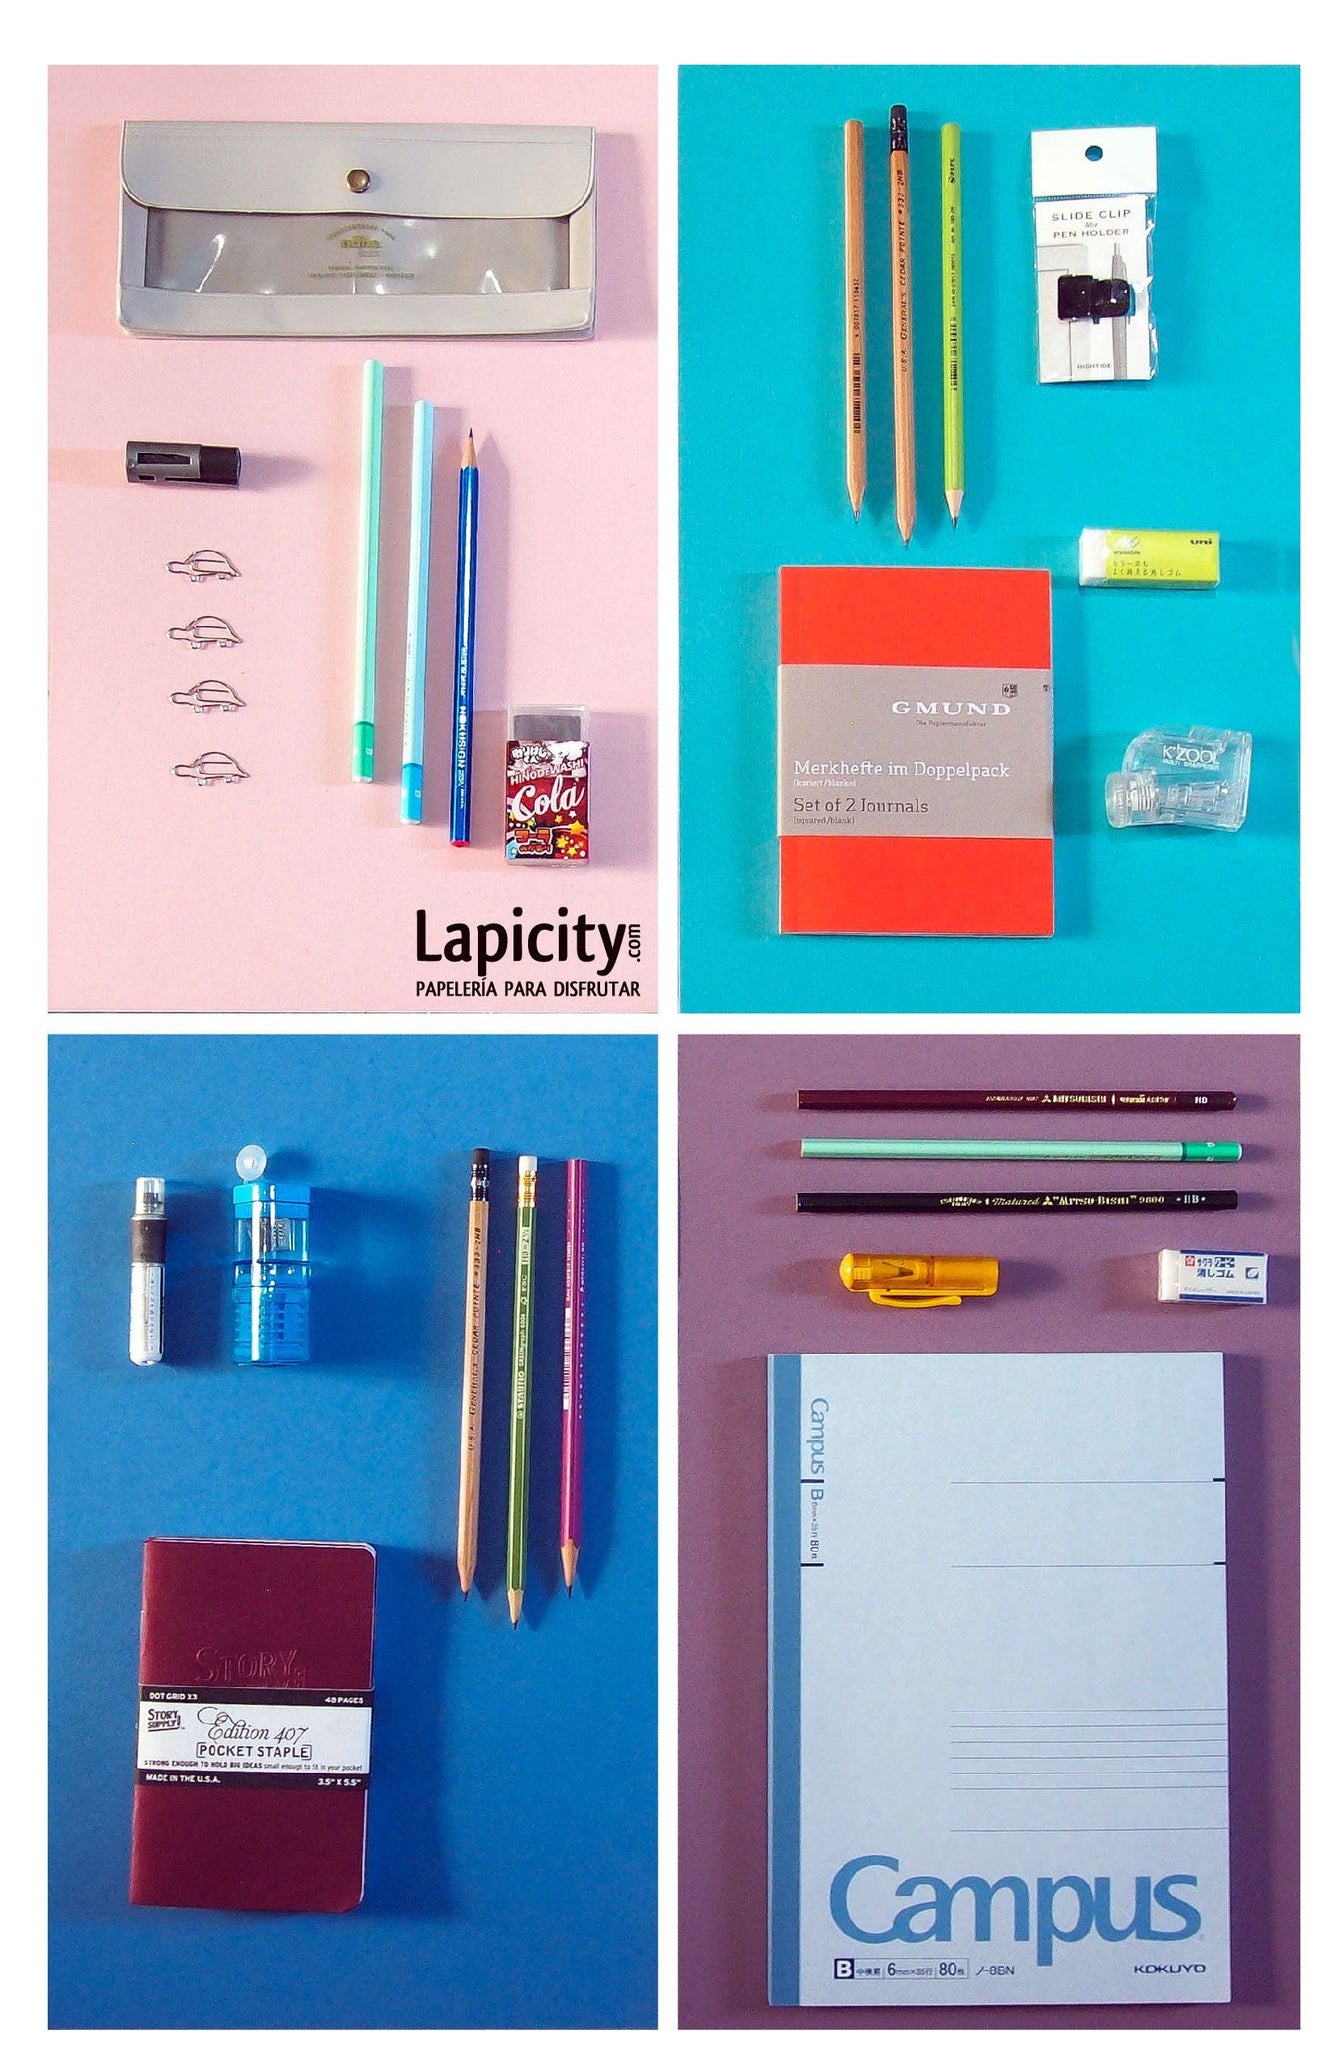 Pack sorpresa, kit sorpresa - Lapicity